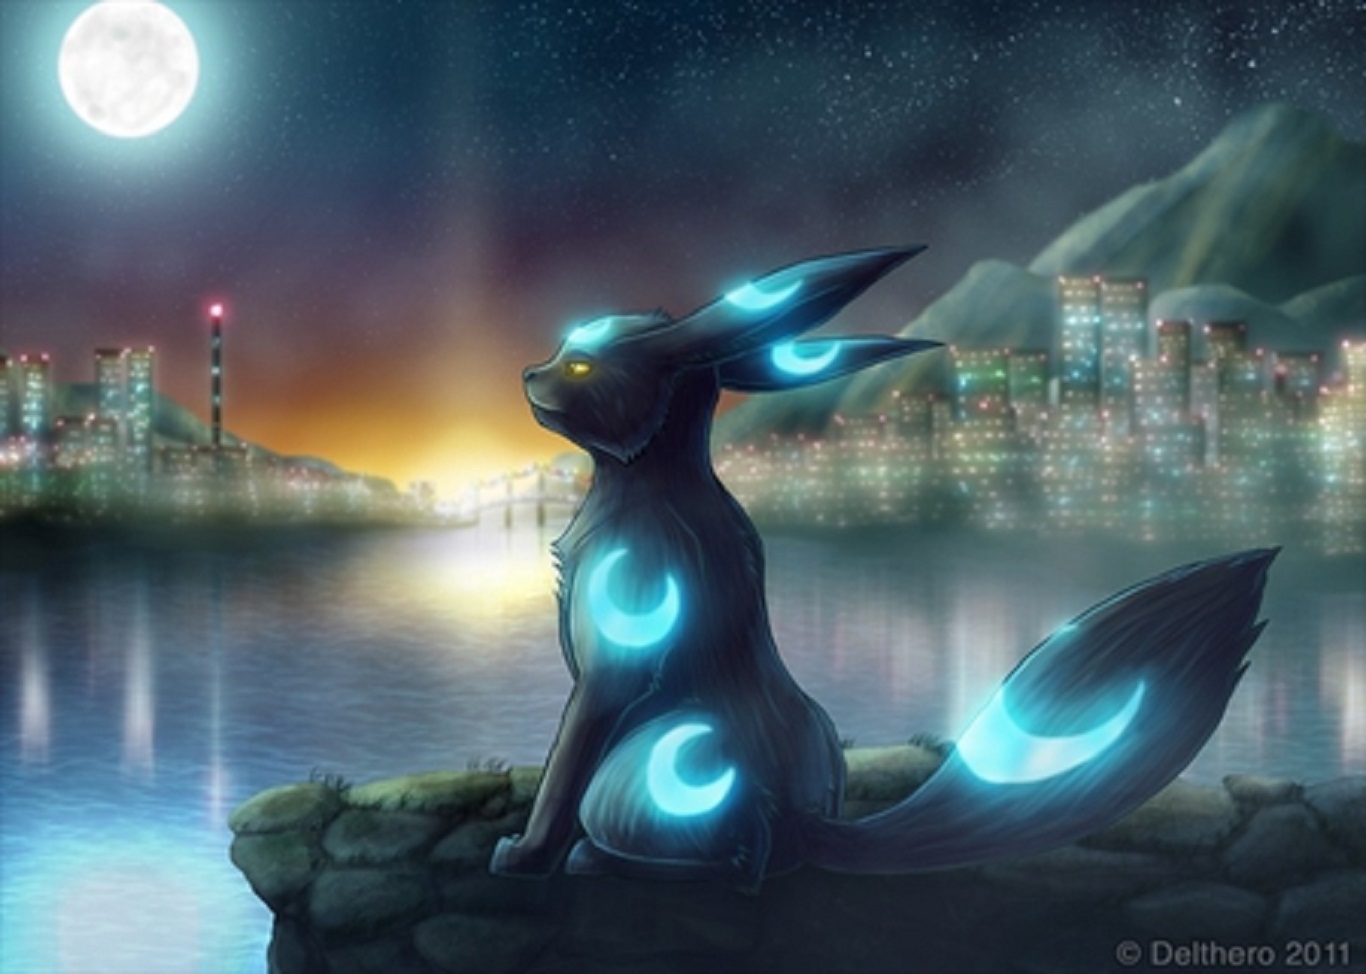 fondo de pantalla de pokemon brillante,cg artwork,cielo,personaje de ficción,noche,espacio